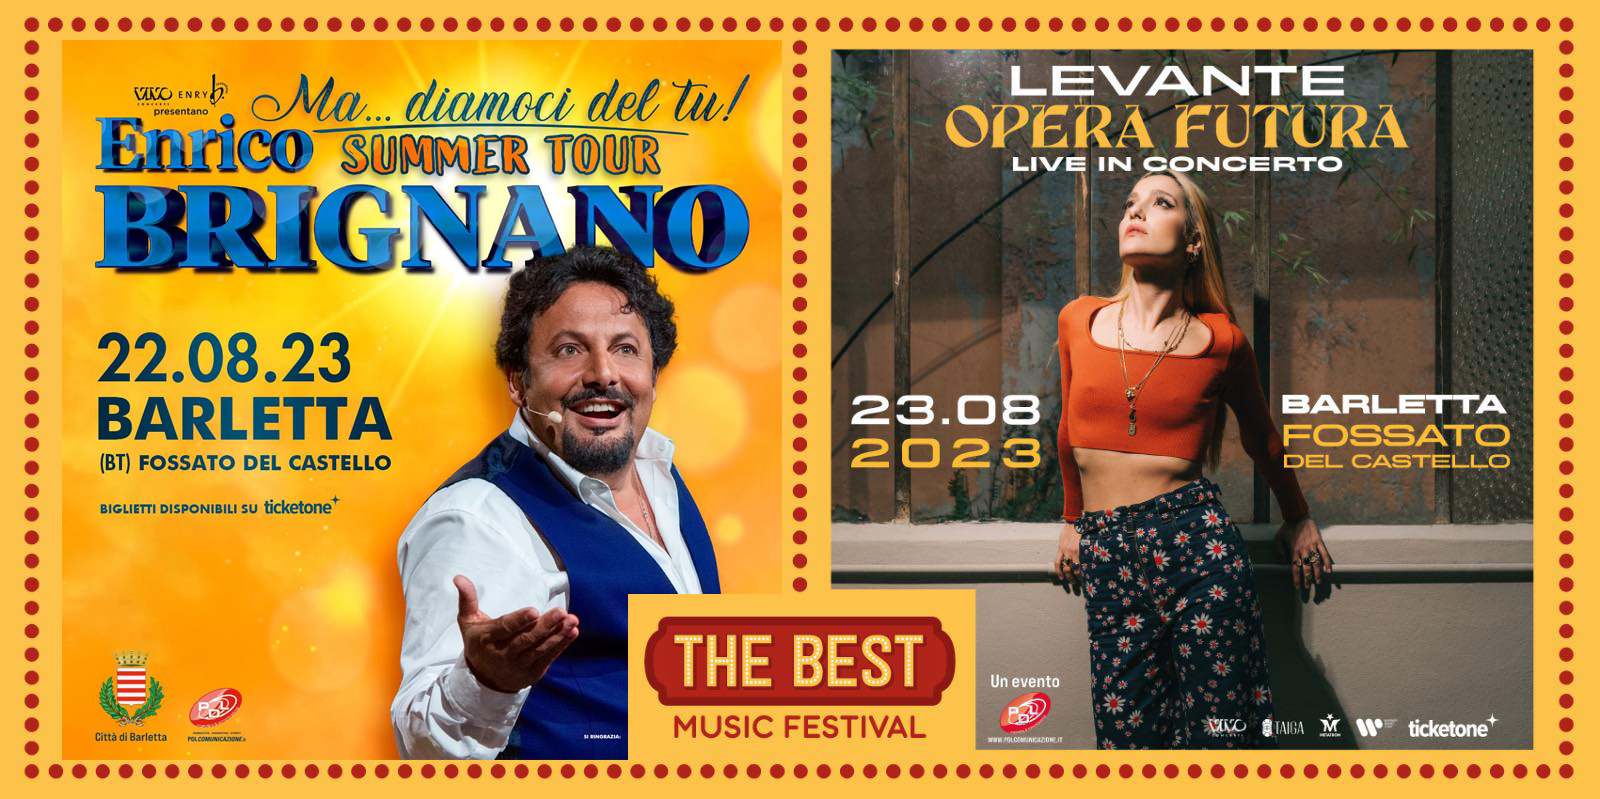 Enrico Brignano e Levante a Barletta chiudono il “The Best music festival”